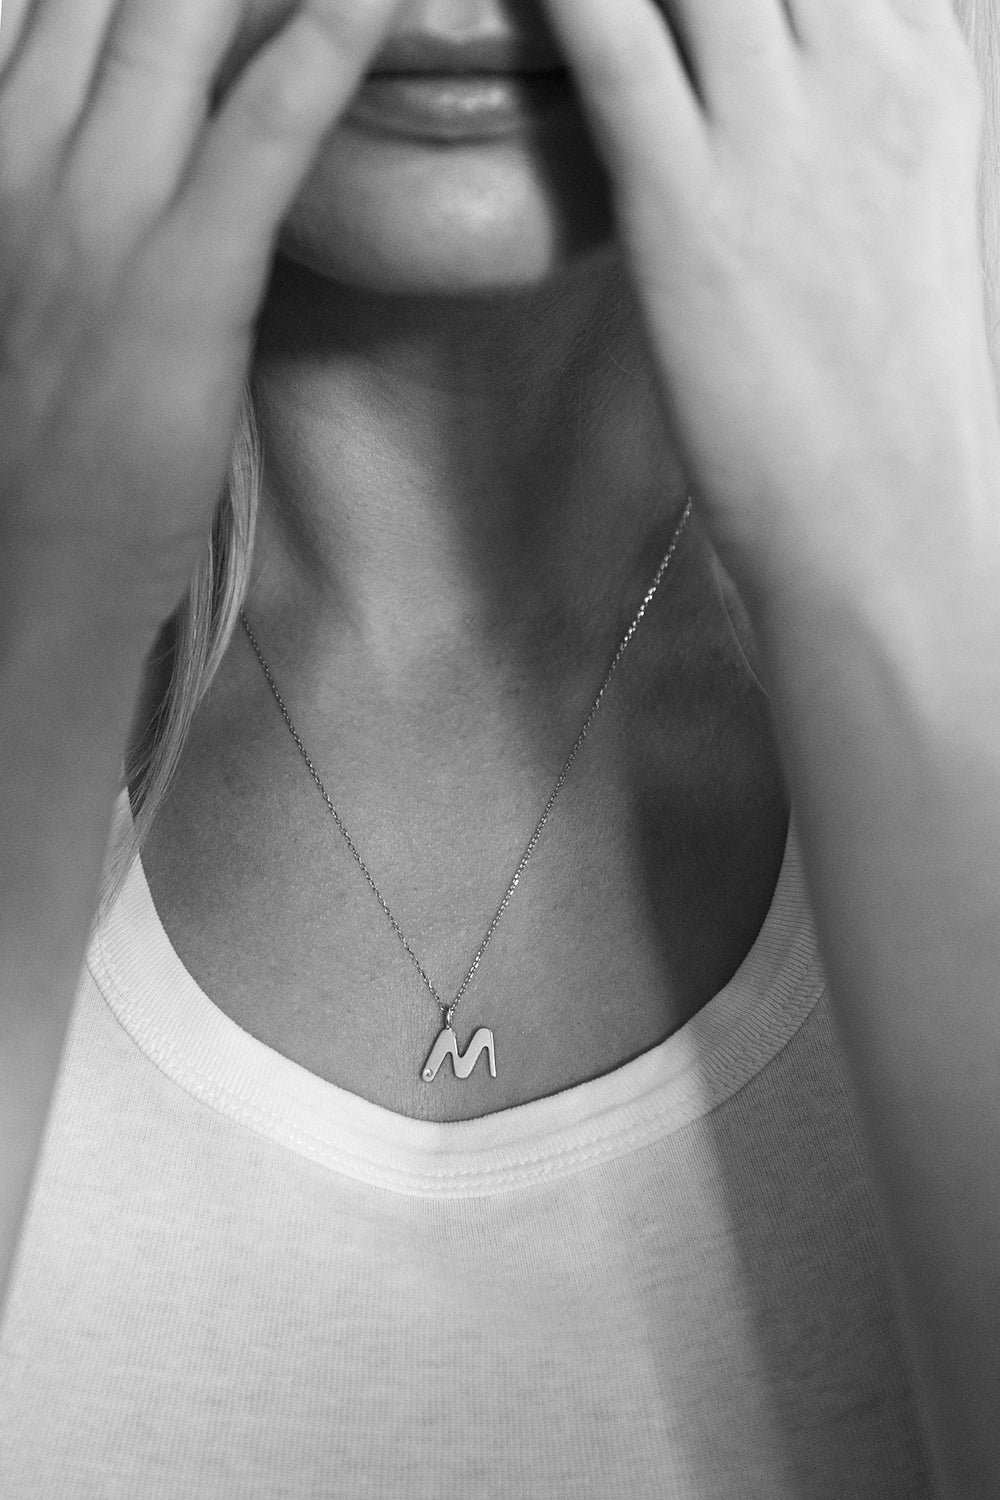 M necklace